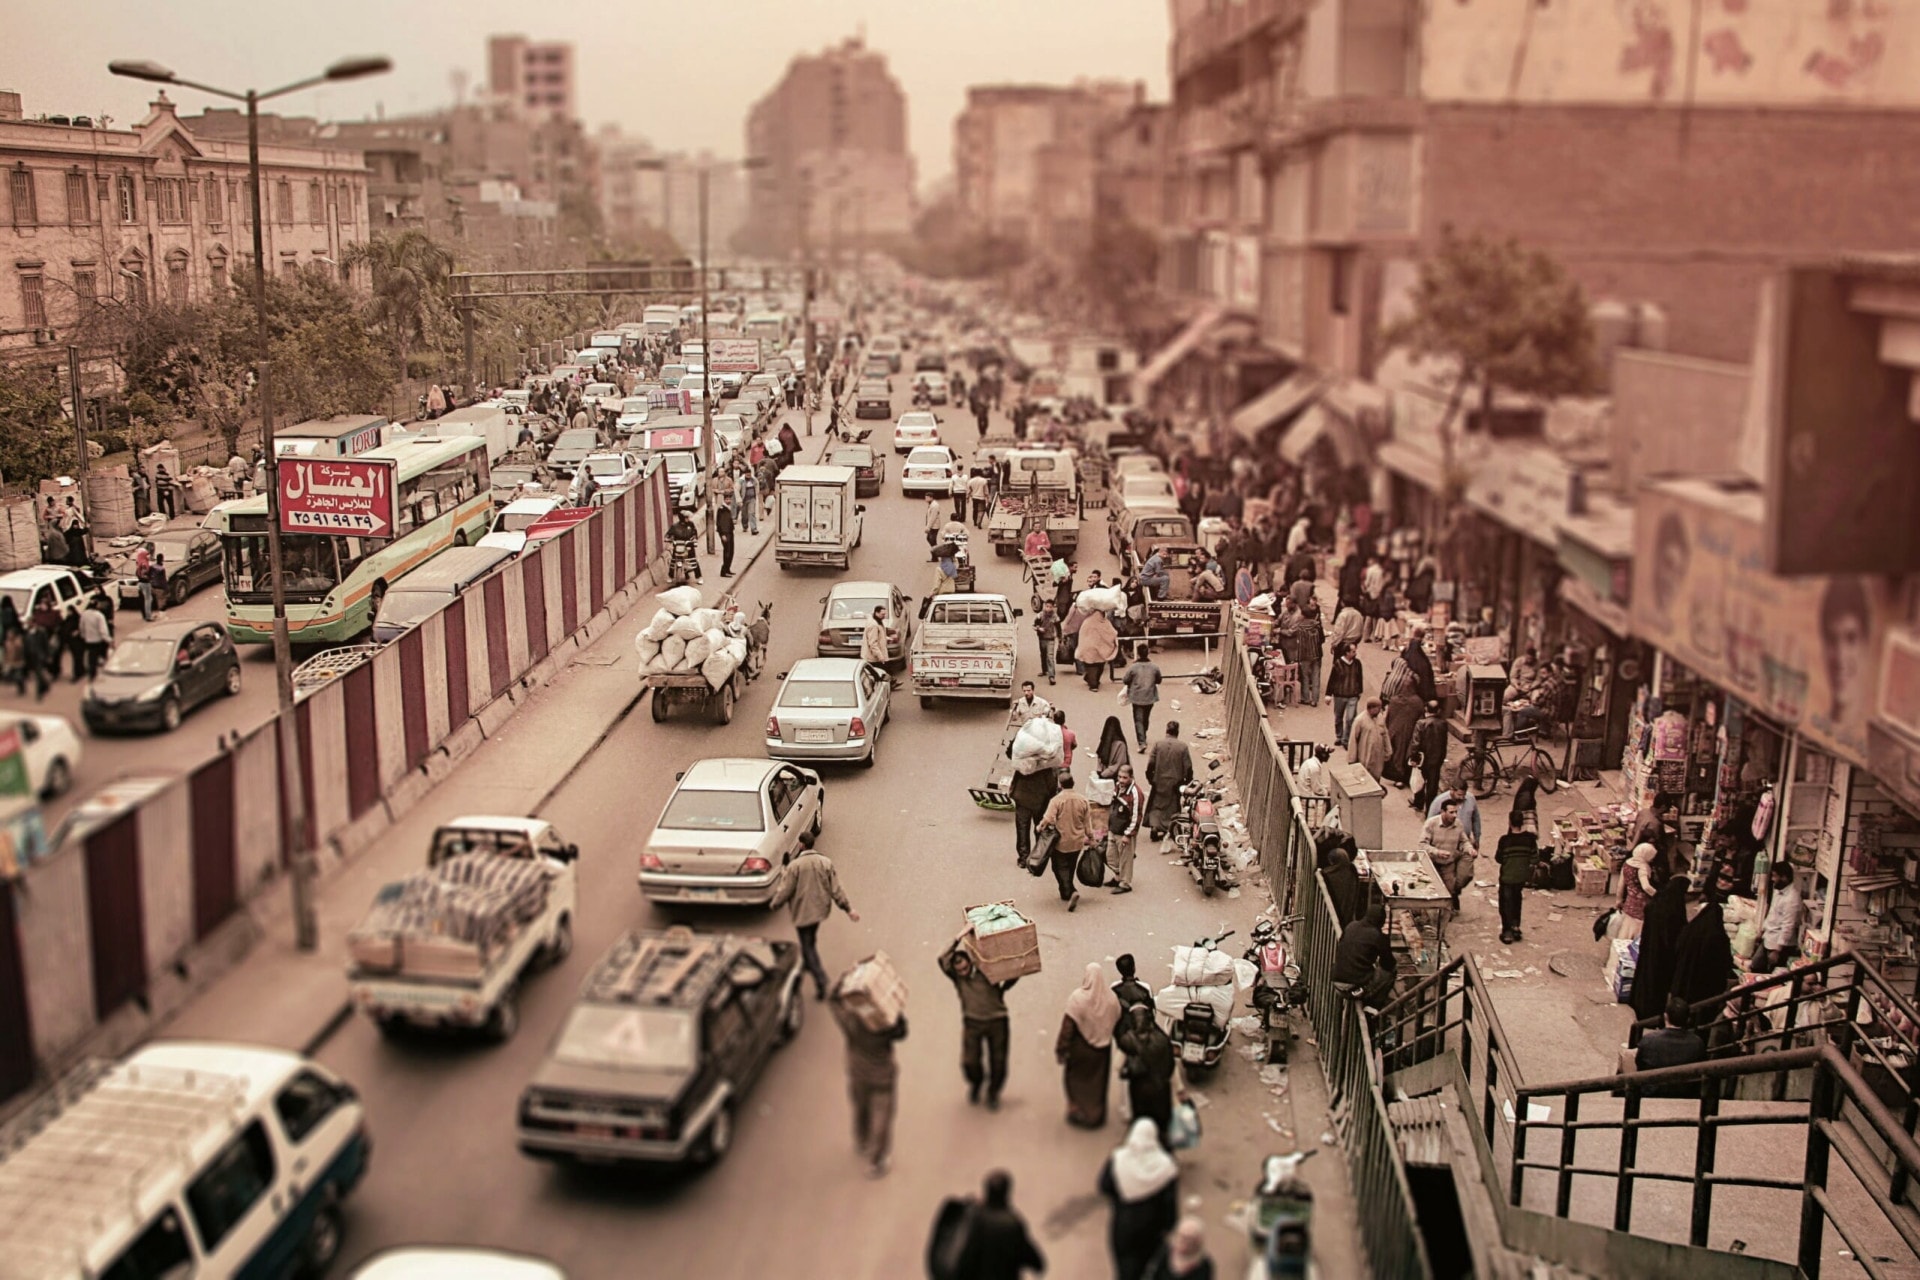 Cairo, Egypt air pollution